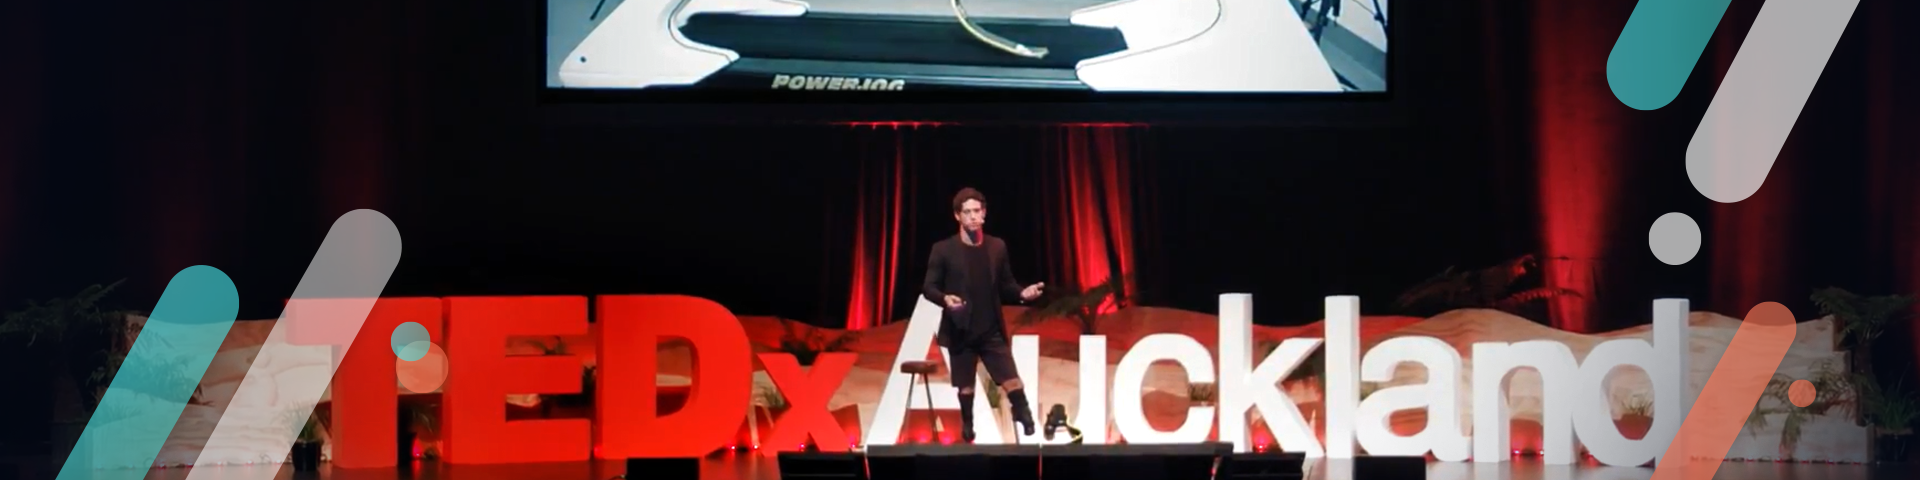 TEDx Liam Malone